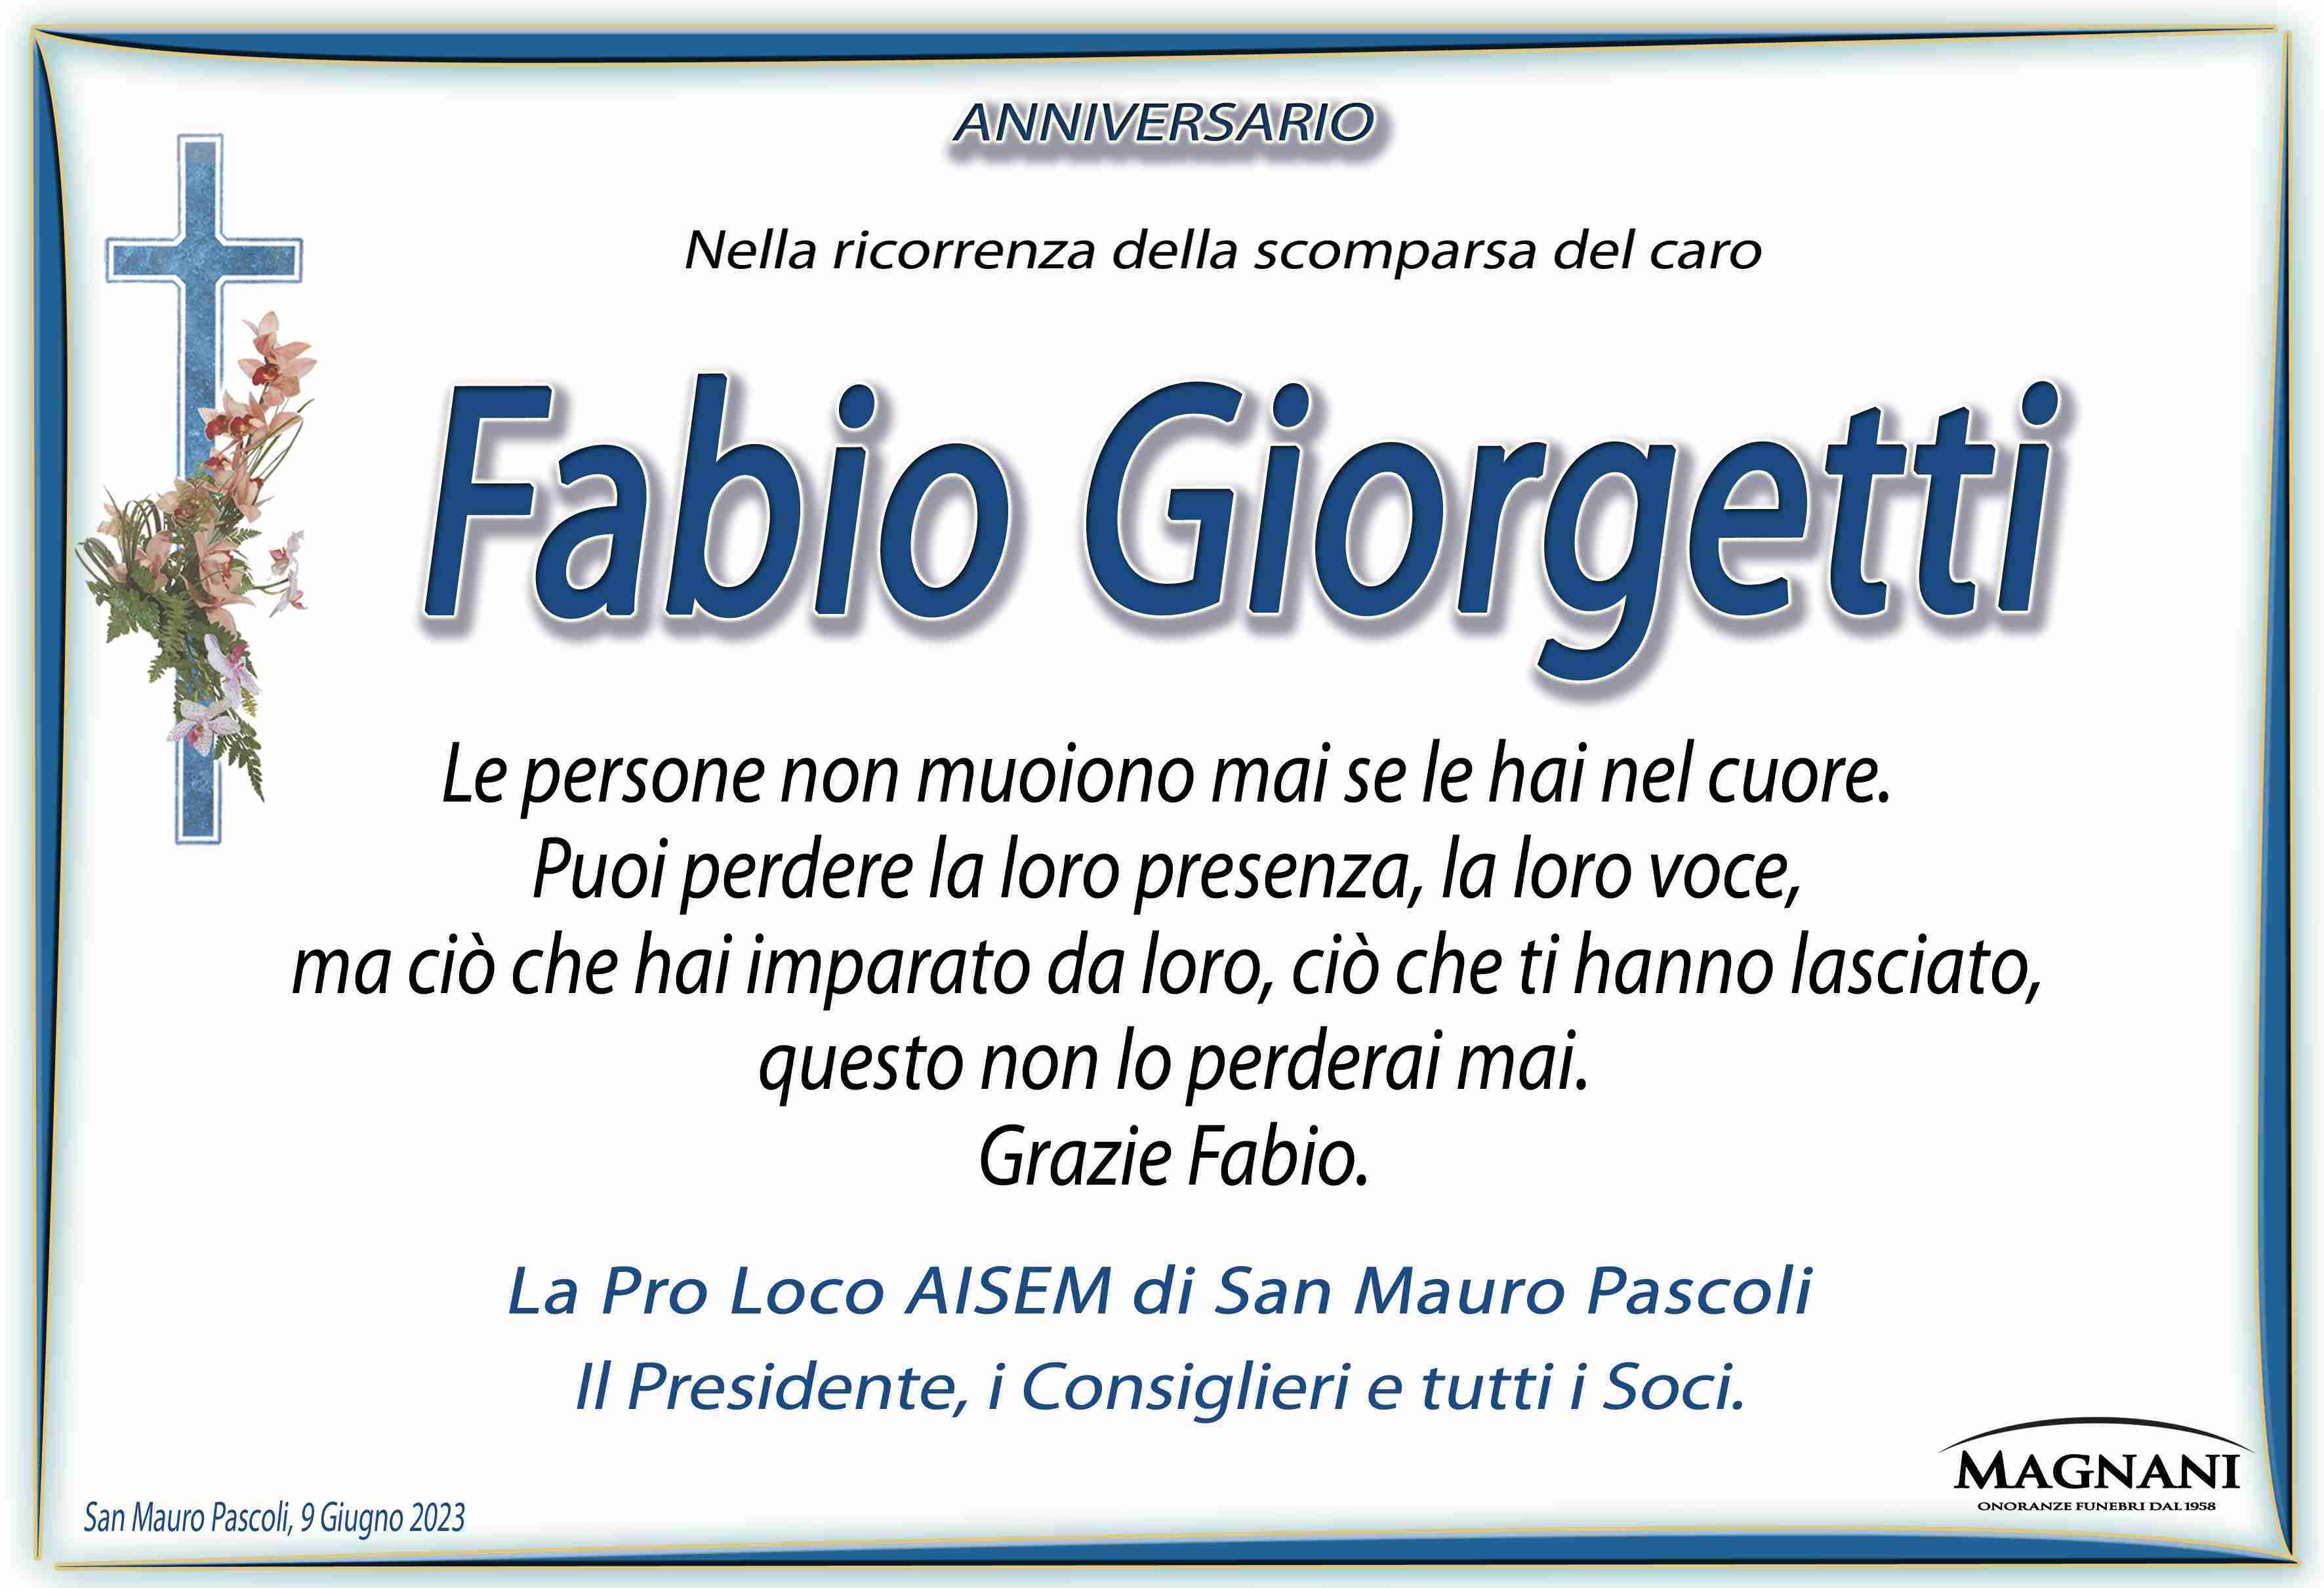 Fabio Giorgetti